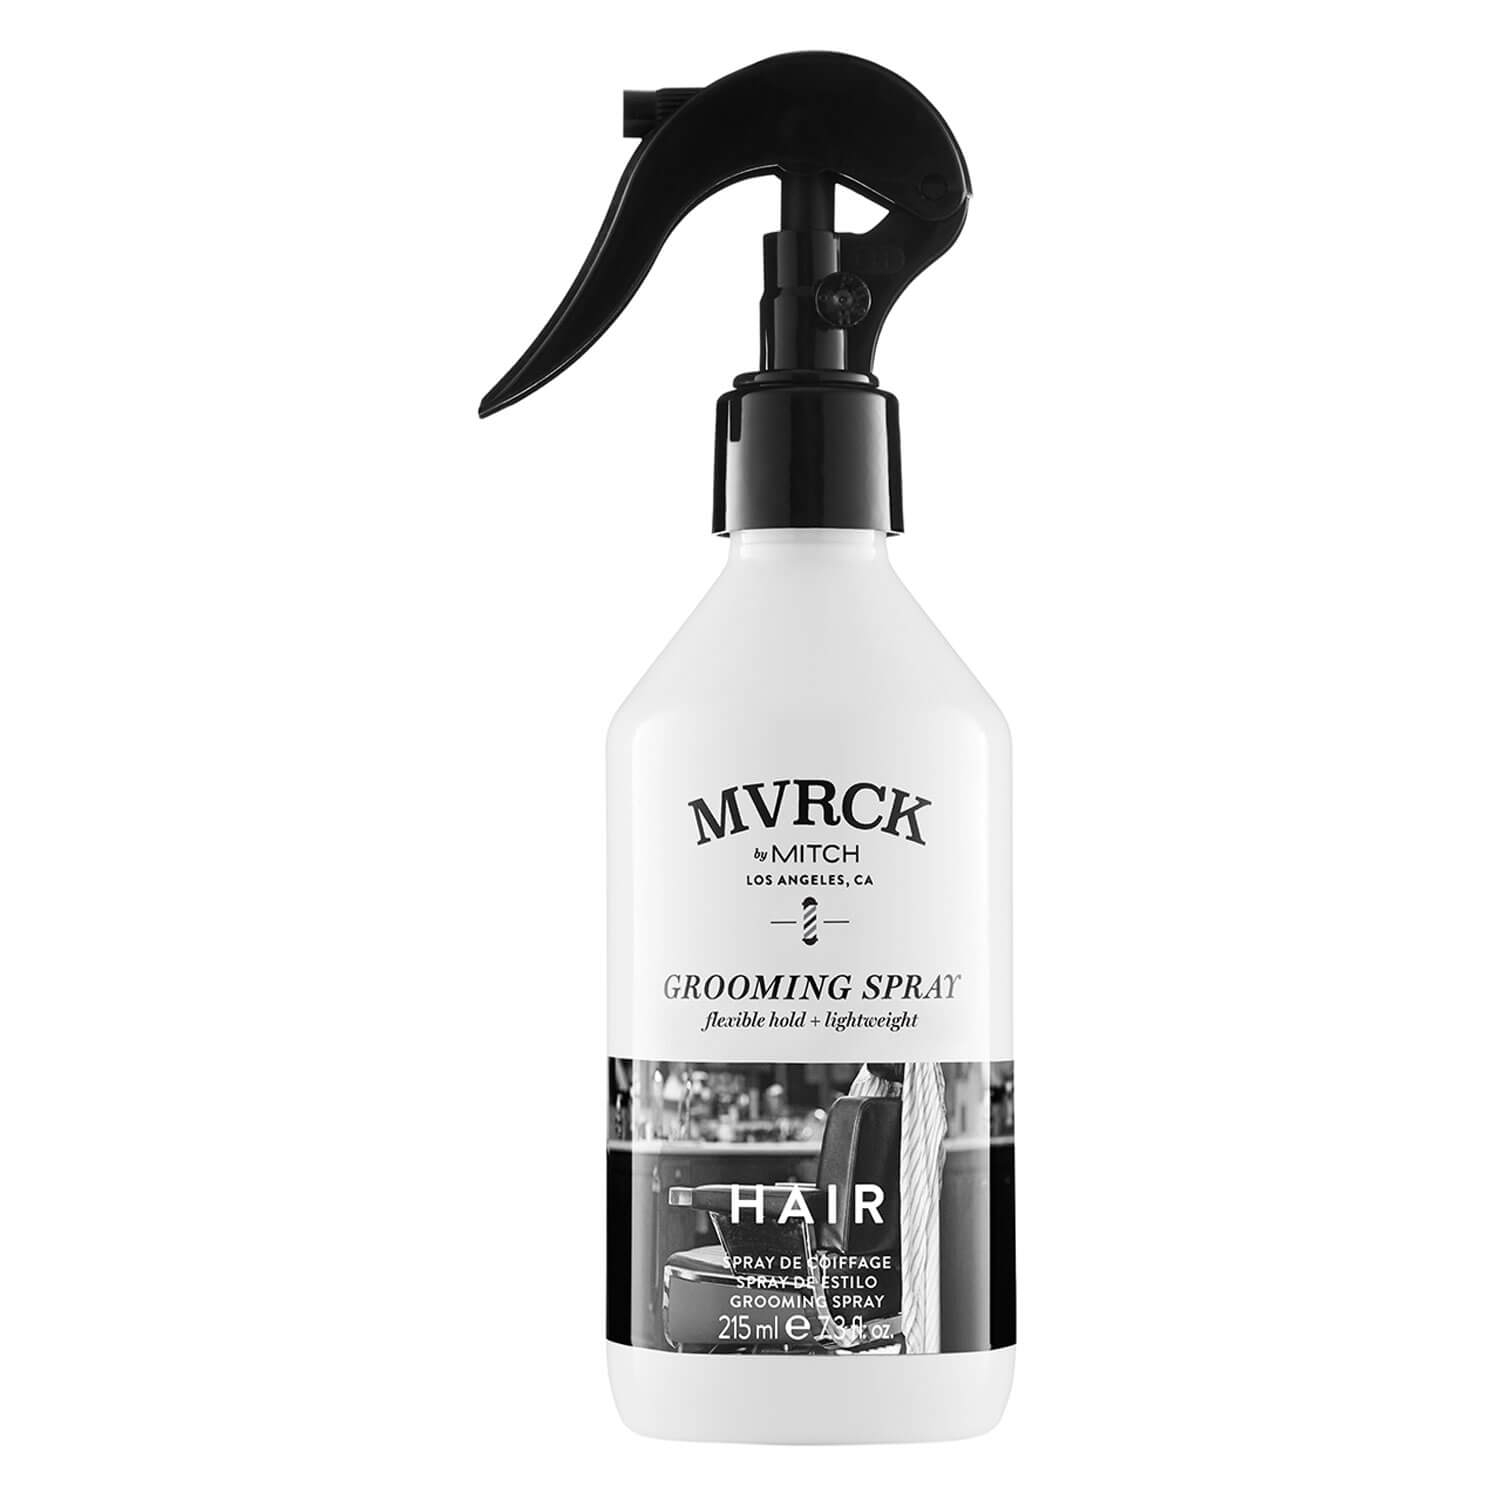 Produktbild von MVRCK - Grooming Spray